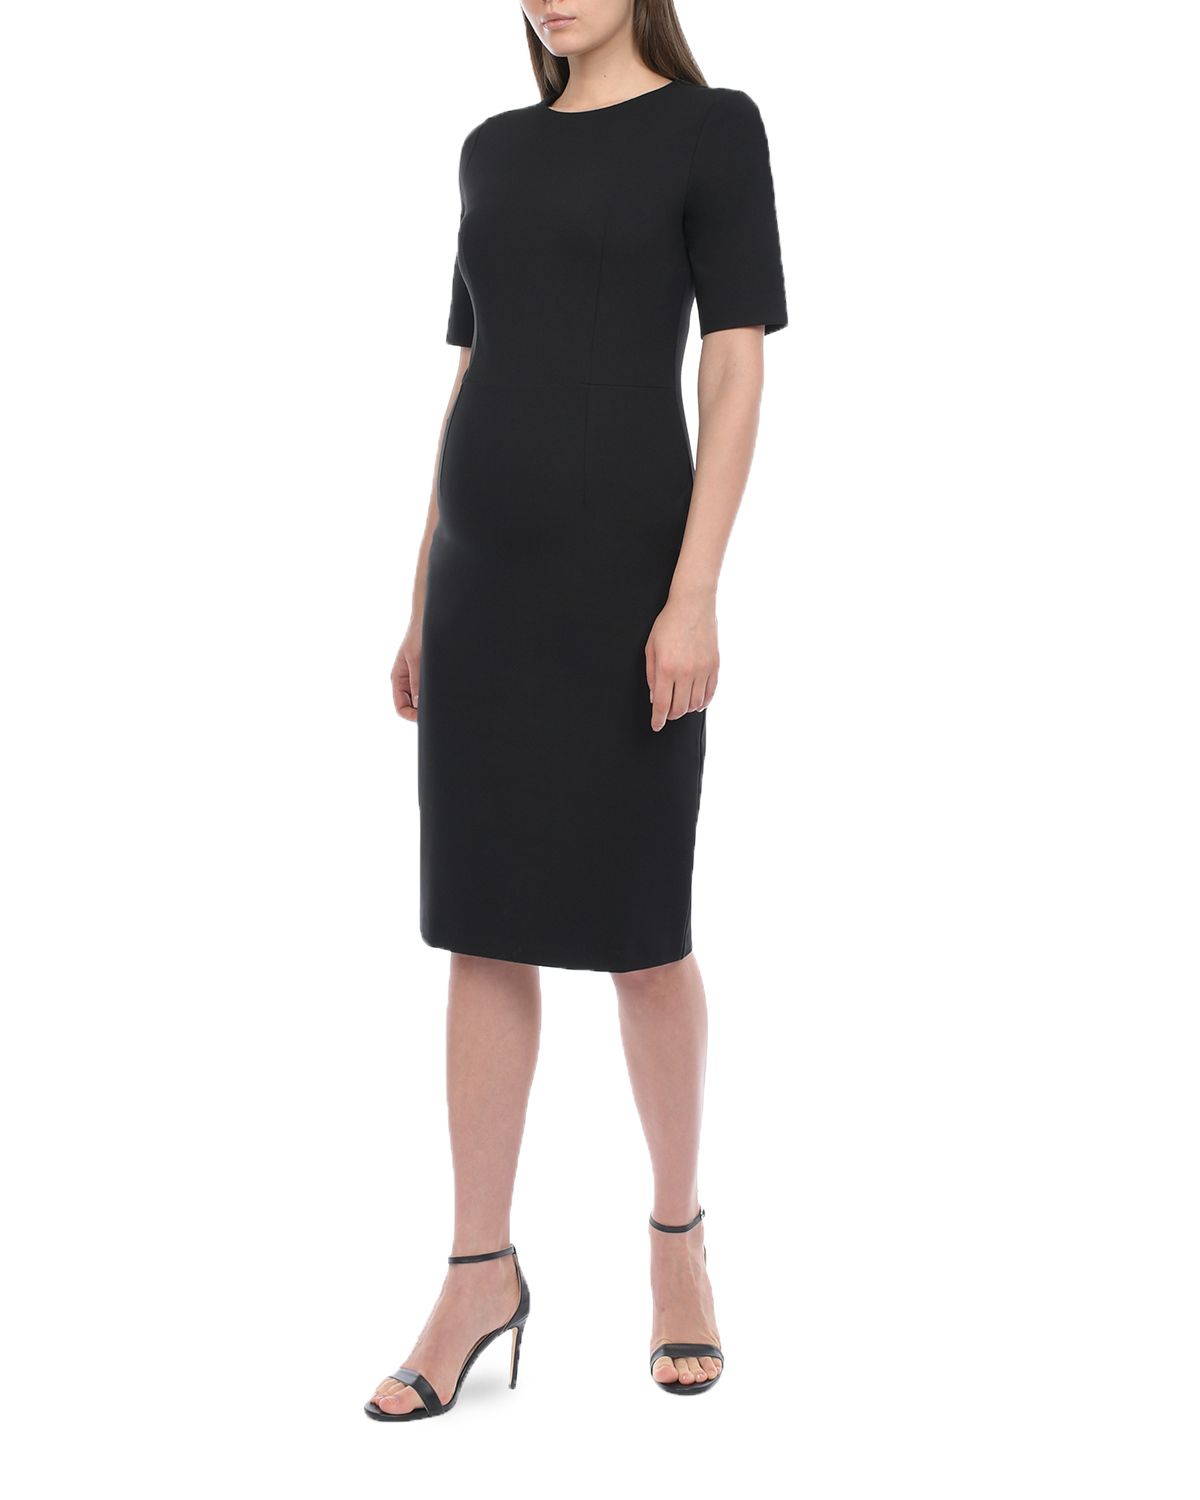 Трикотажное черное платье-футляр Dan Maralex, размер 42, цвет черный - фото 4